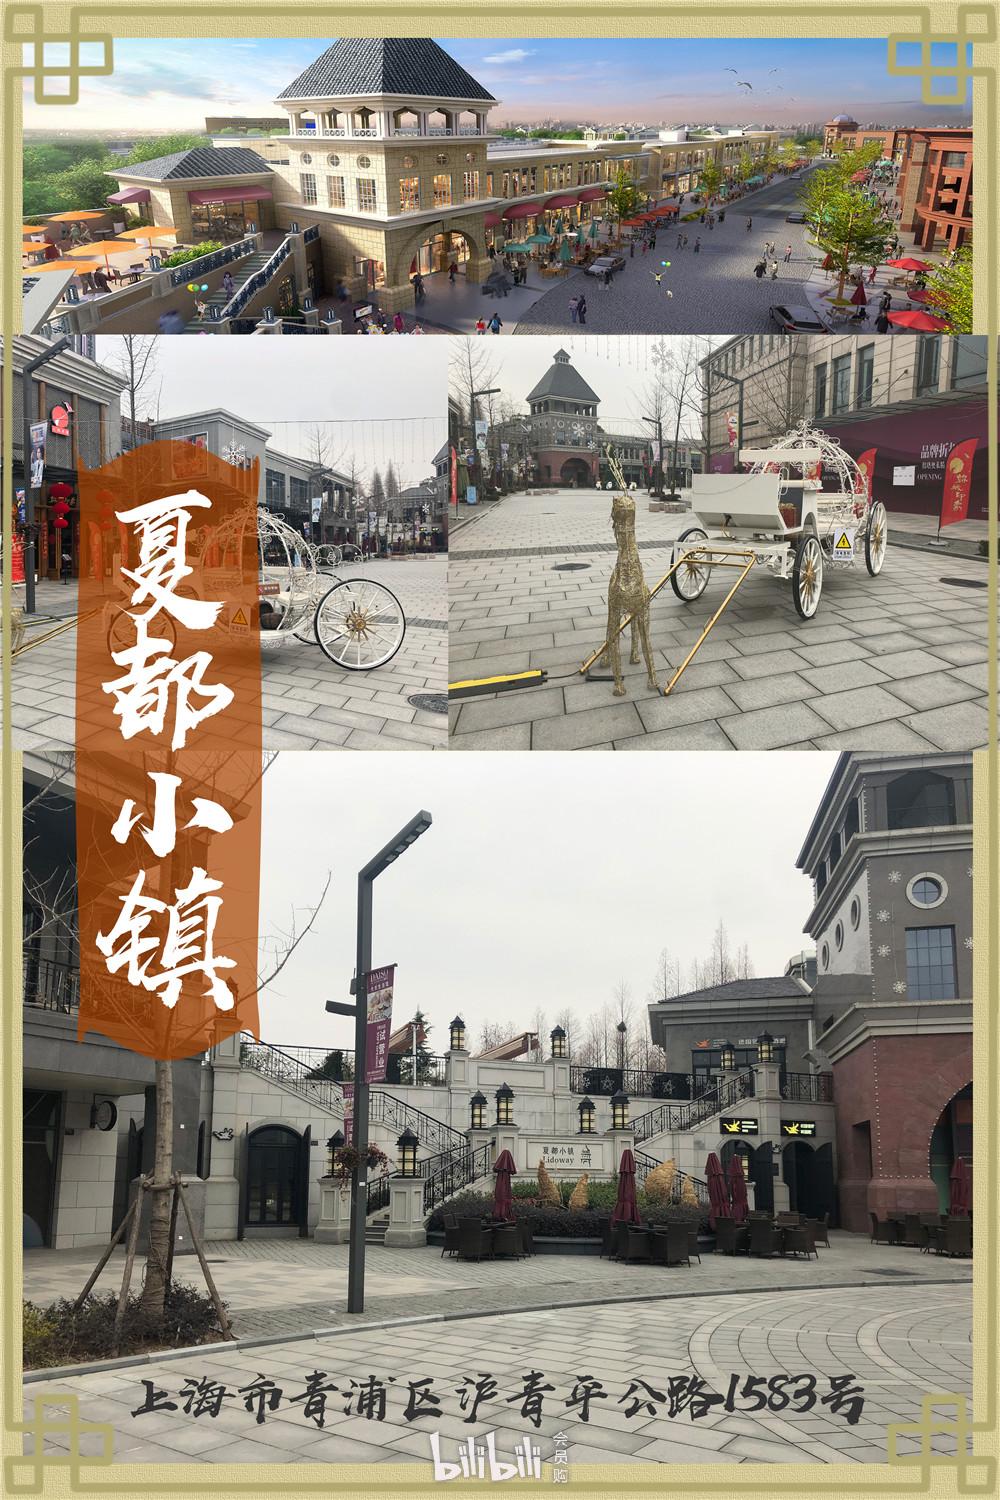 上海夏都小镇景点介绍图片